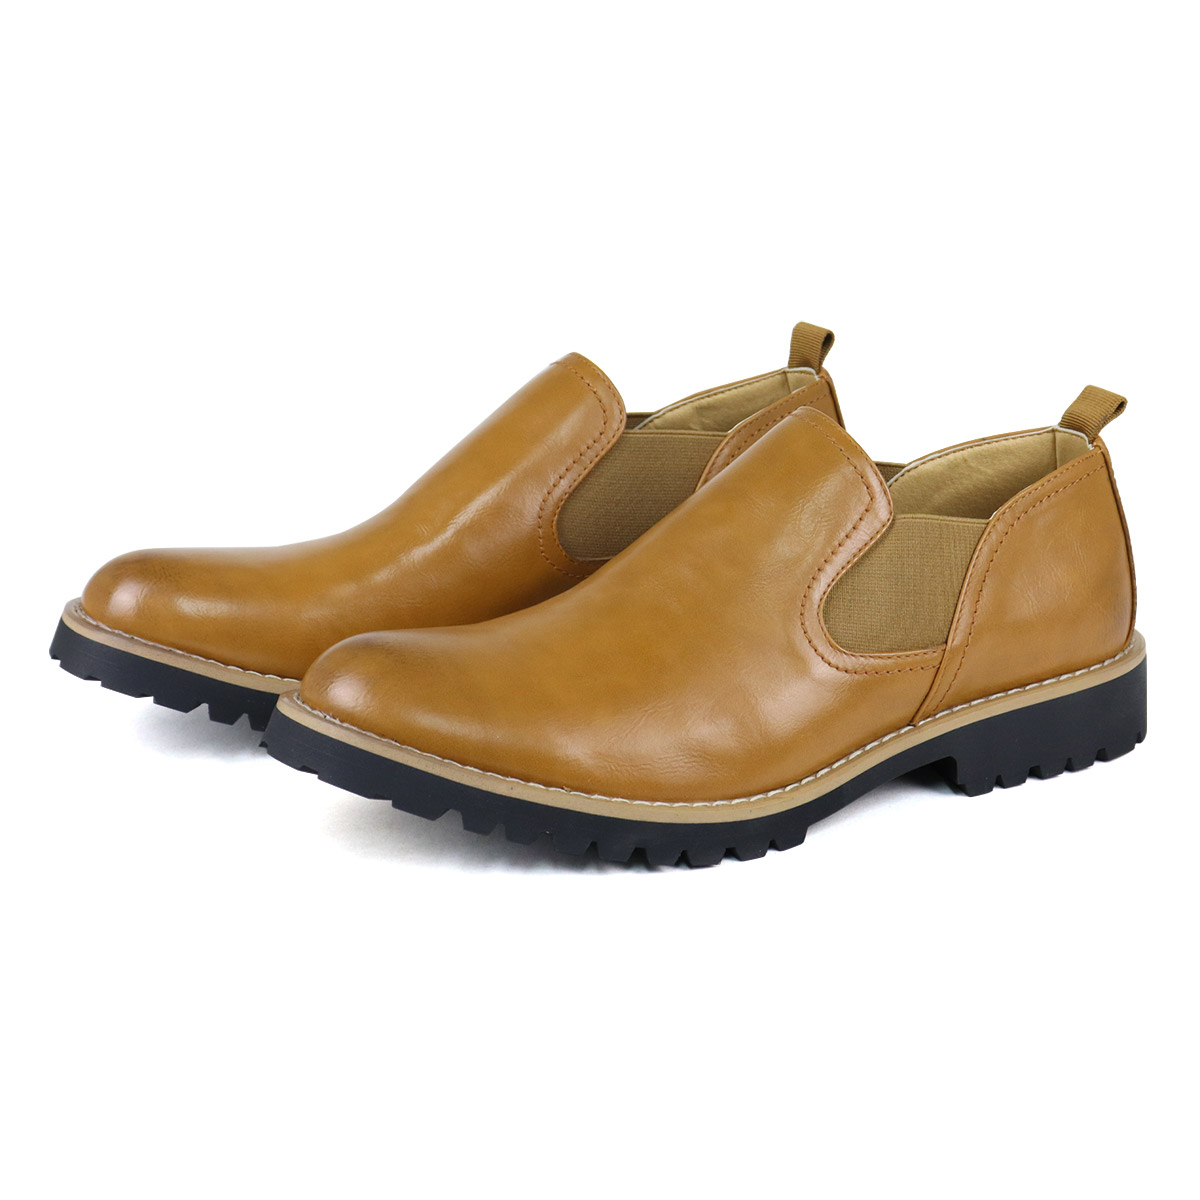 ブーツ メンズ ショート 黒 サイドゴア レザー 合成皮革 25-27cm 革靴